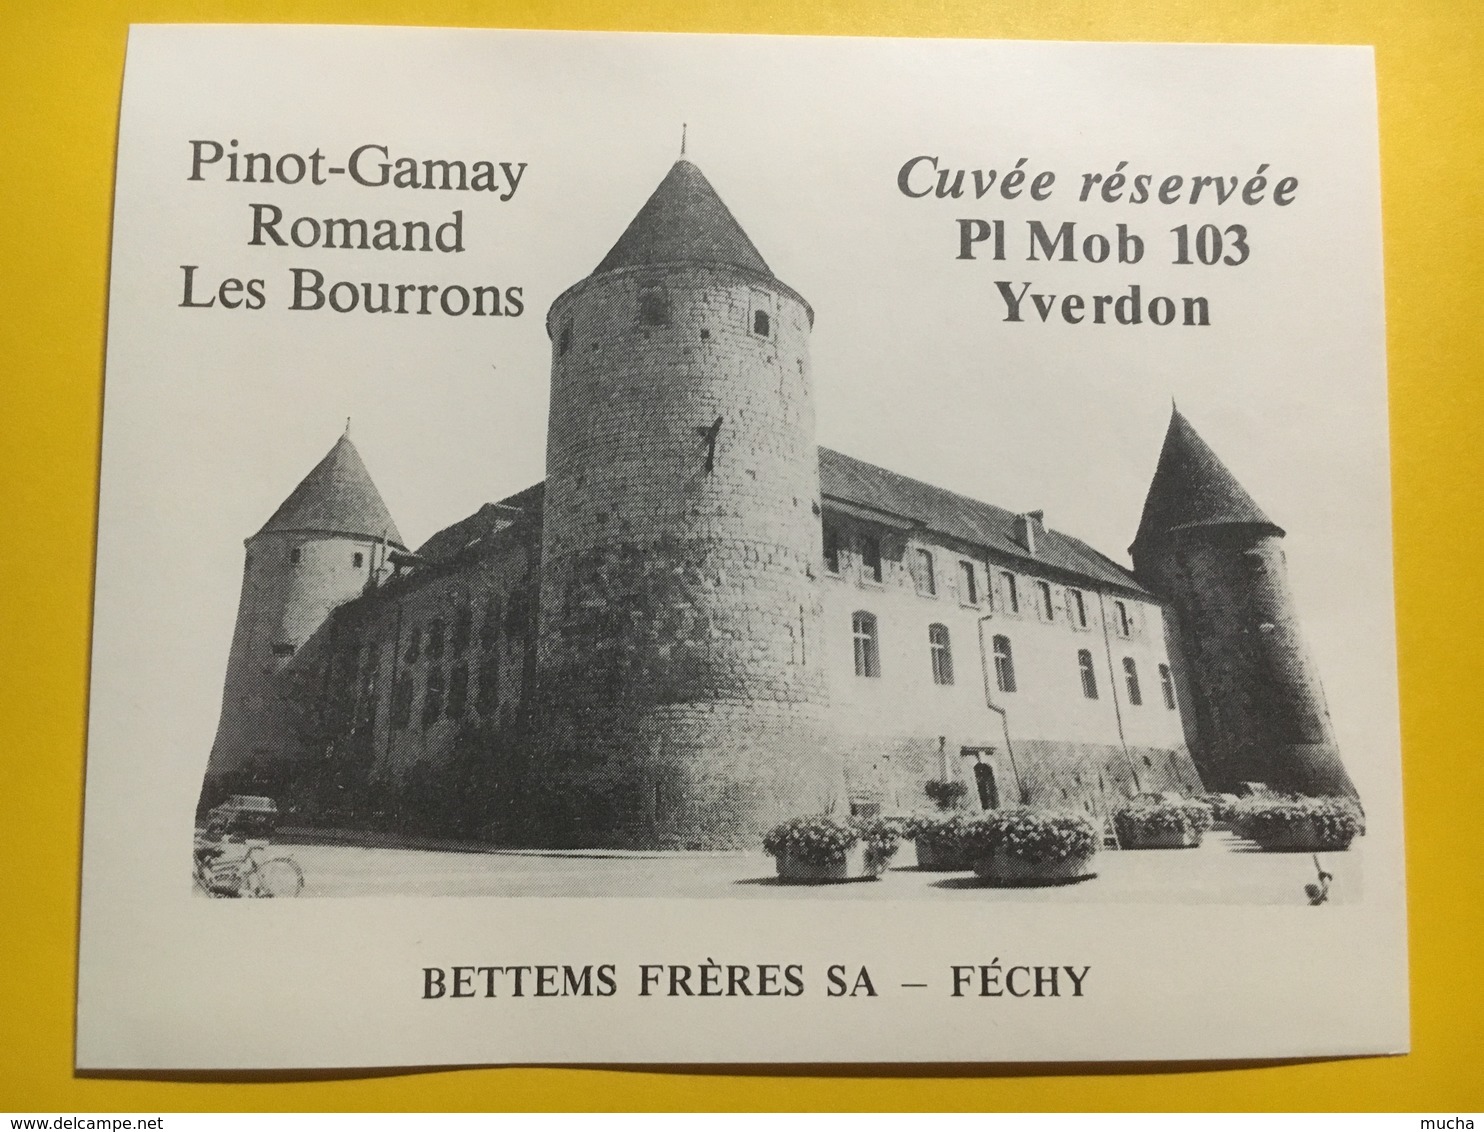 8696 - Cuvée Réservée Place Mobilisation 103 Yverdon  Suisse Pinot-Gamay  & Féchy 2 étiquettes - Militaire